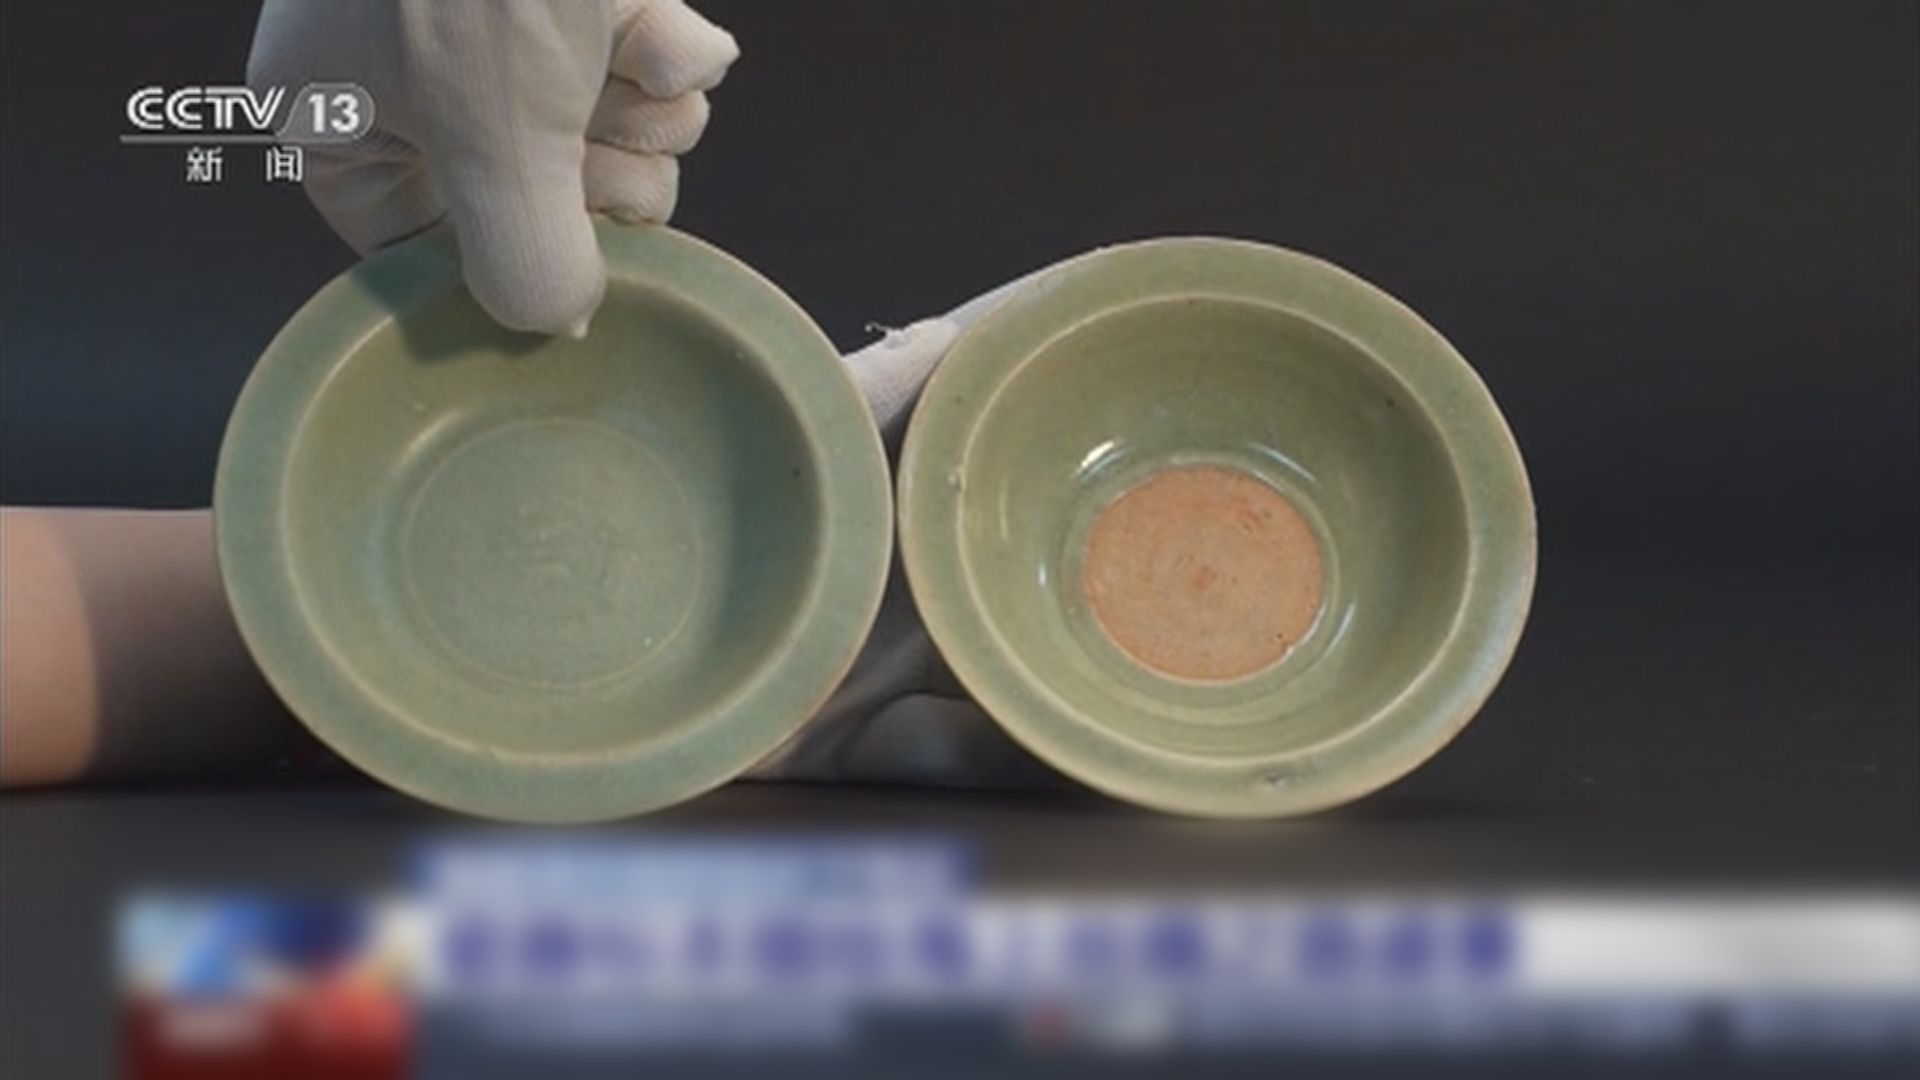 福建聖杯嶼海域元代古船瓷器文物正式提取